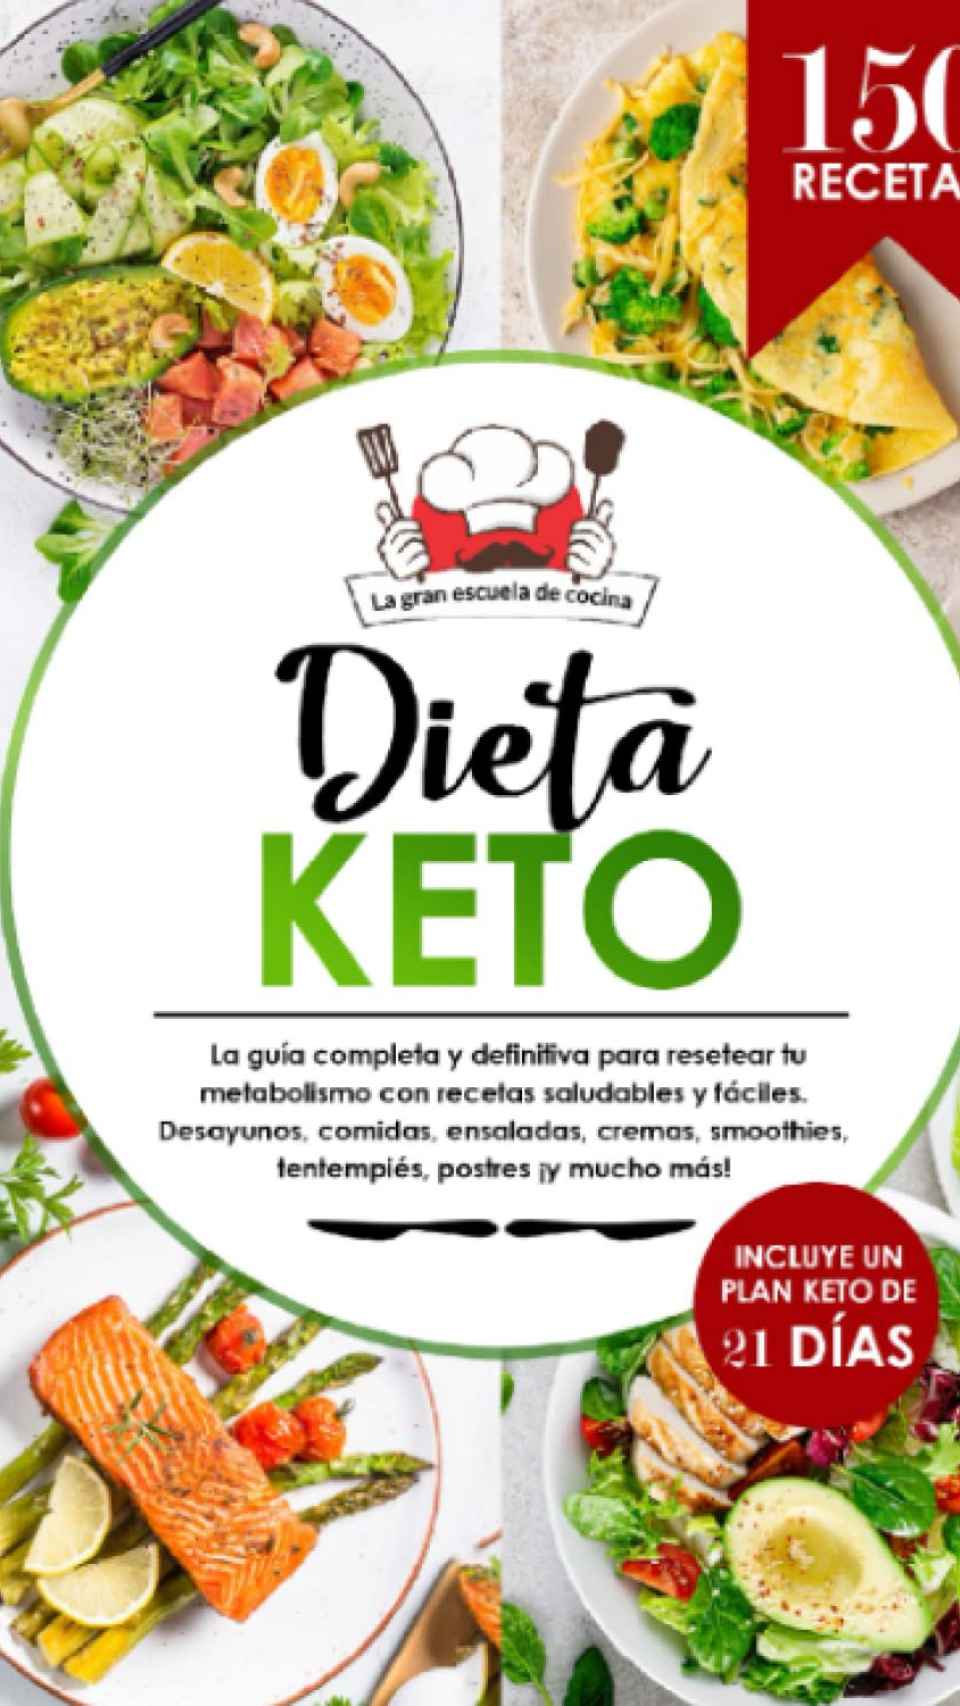 Dieta Keto: el libro de 150 recetas saludables, deliciosas y fáciles